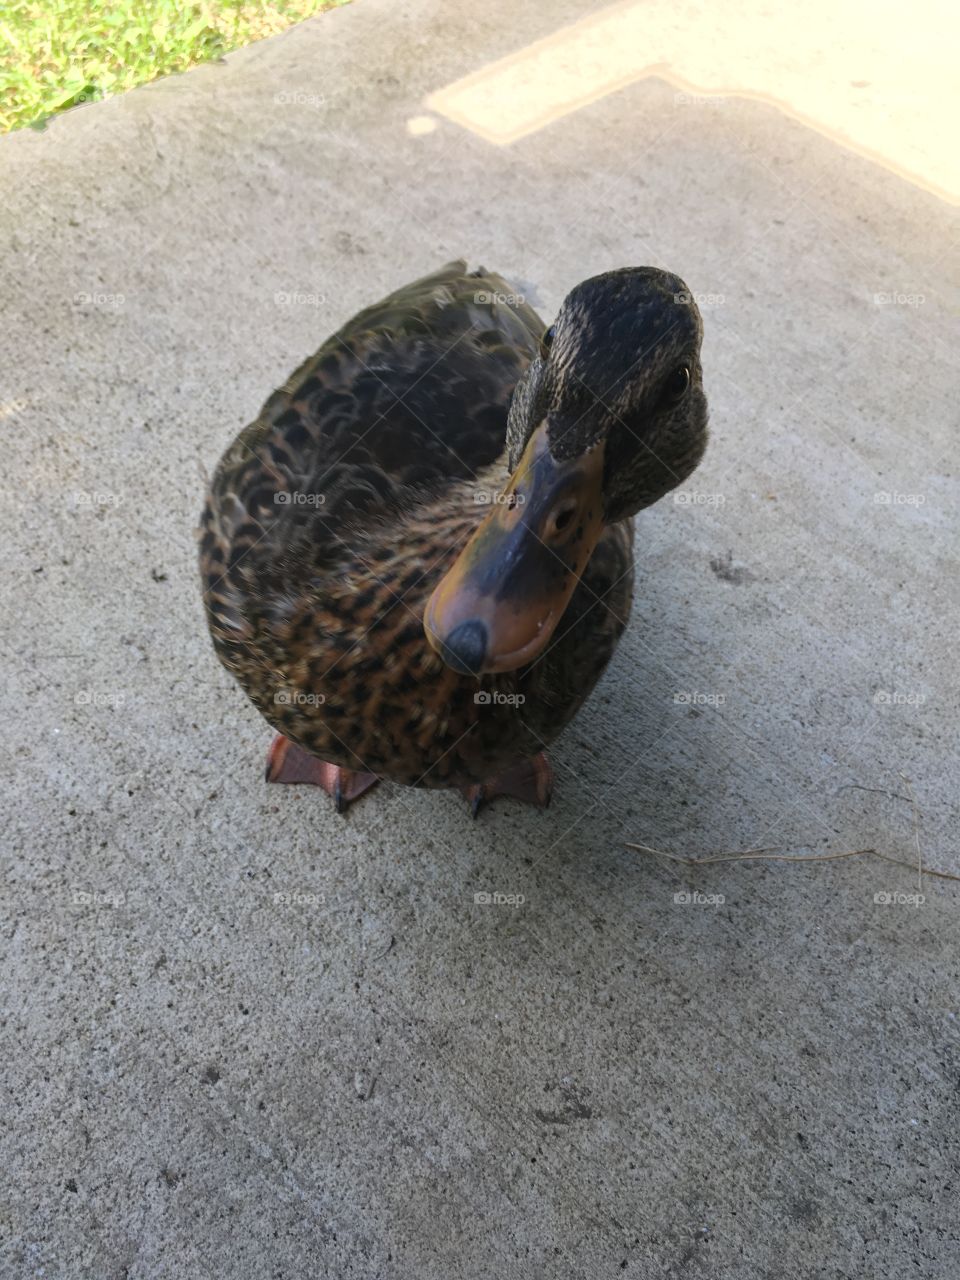 Quack Quack 